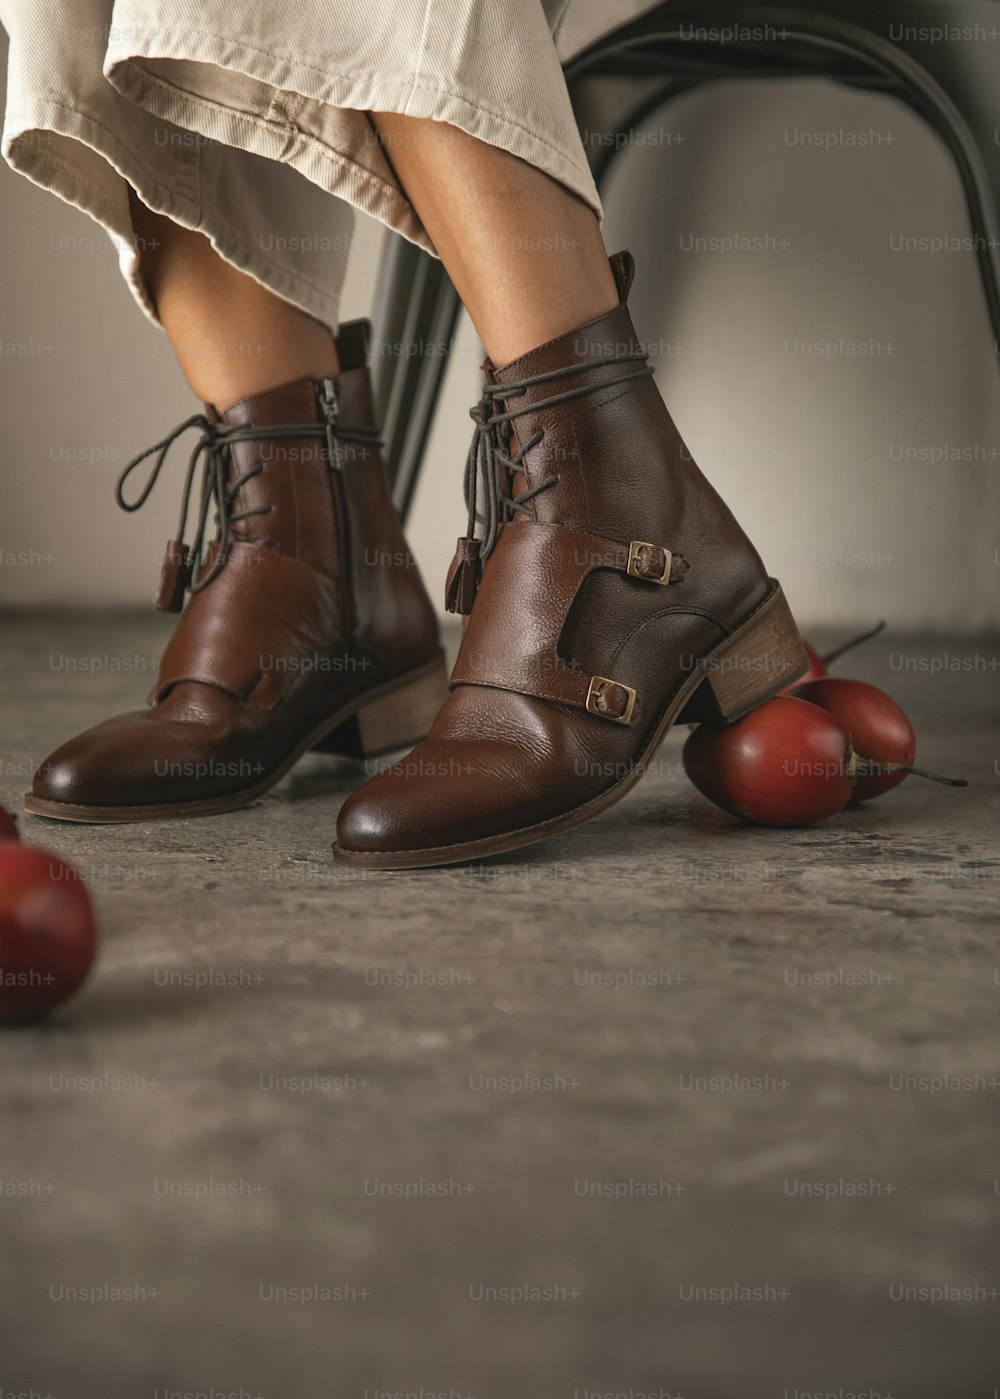 pernas de uma mulher com sapatos marrons e maçãs no chão